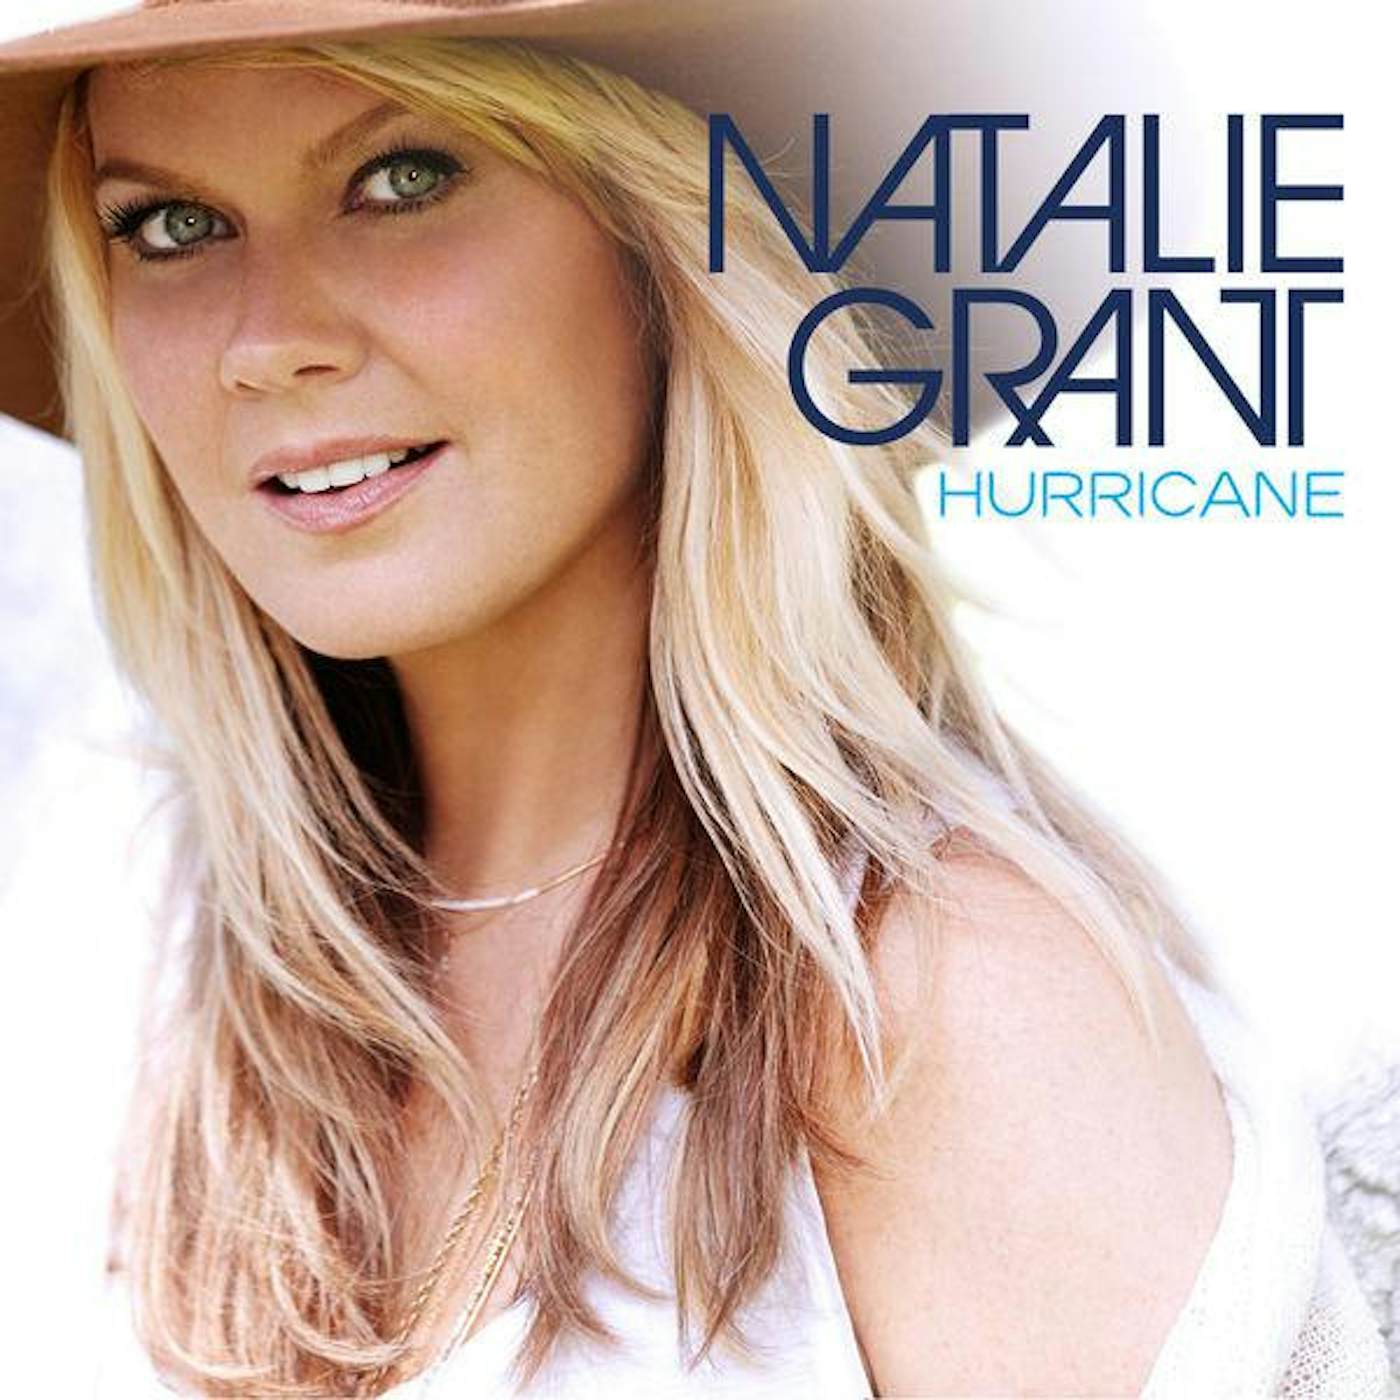 Natalie Grant HURRICANE CD